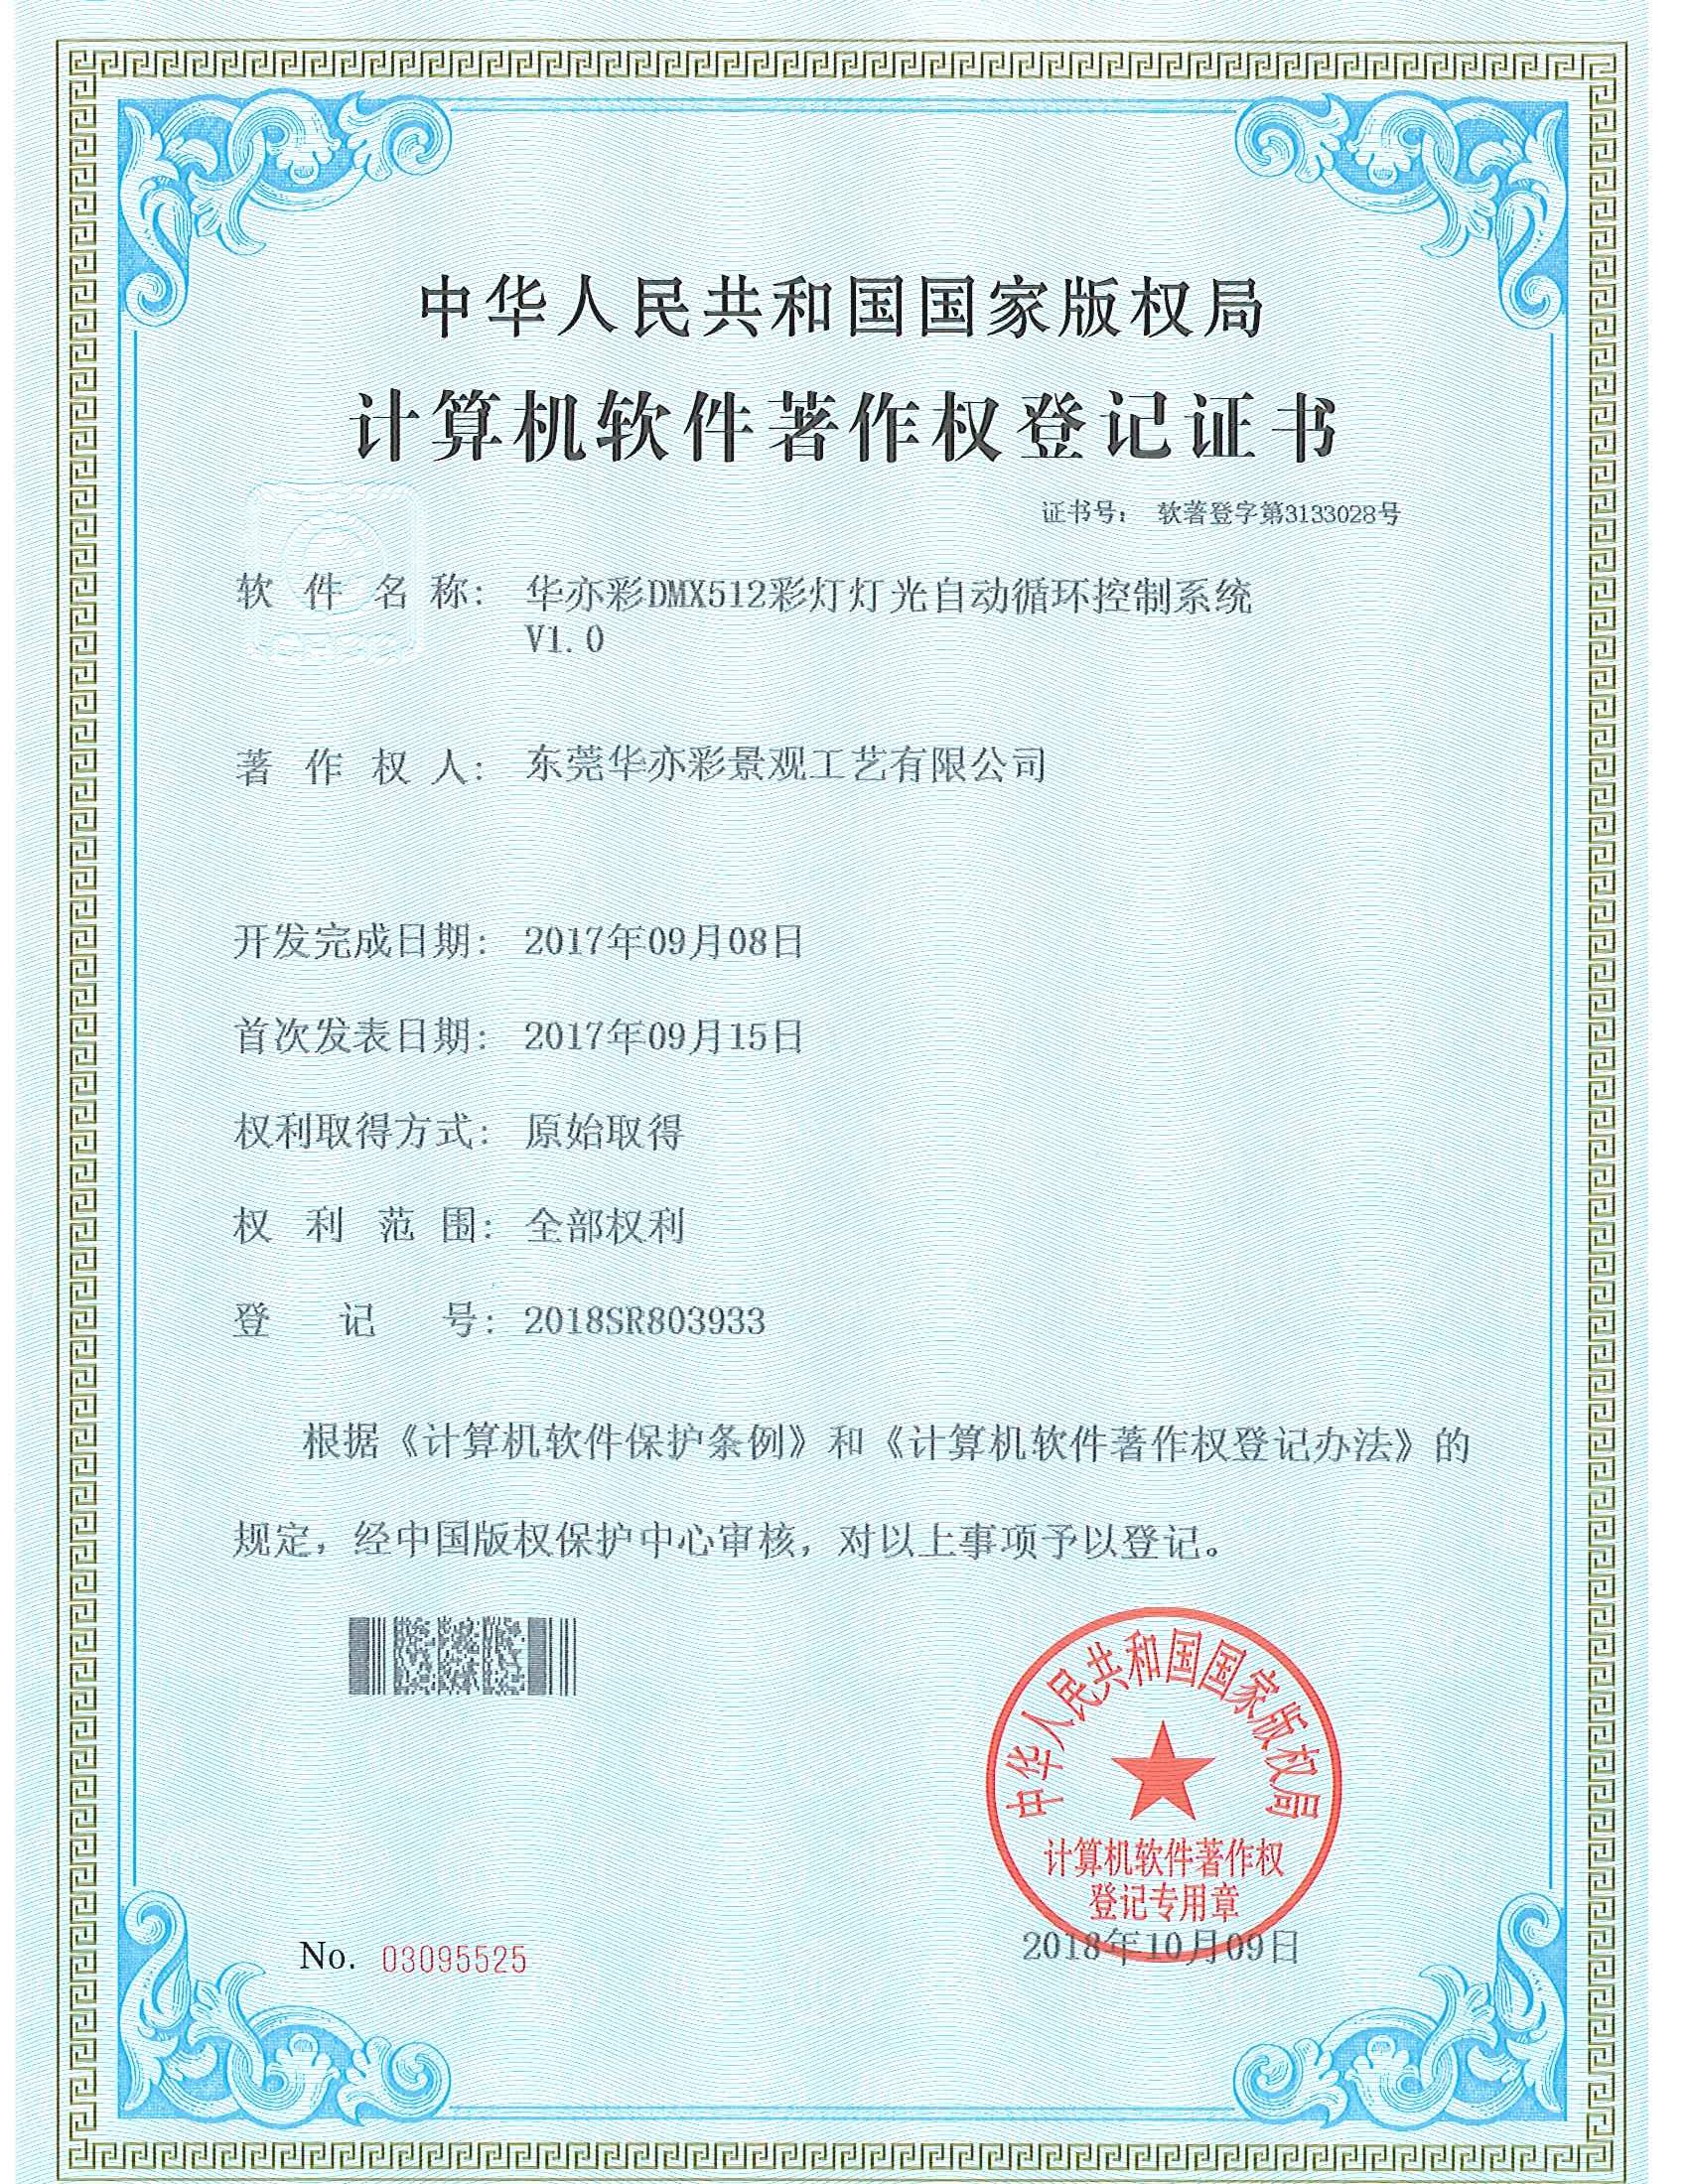 华亦彩荣获计算机软件著作权登记证书